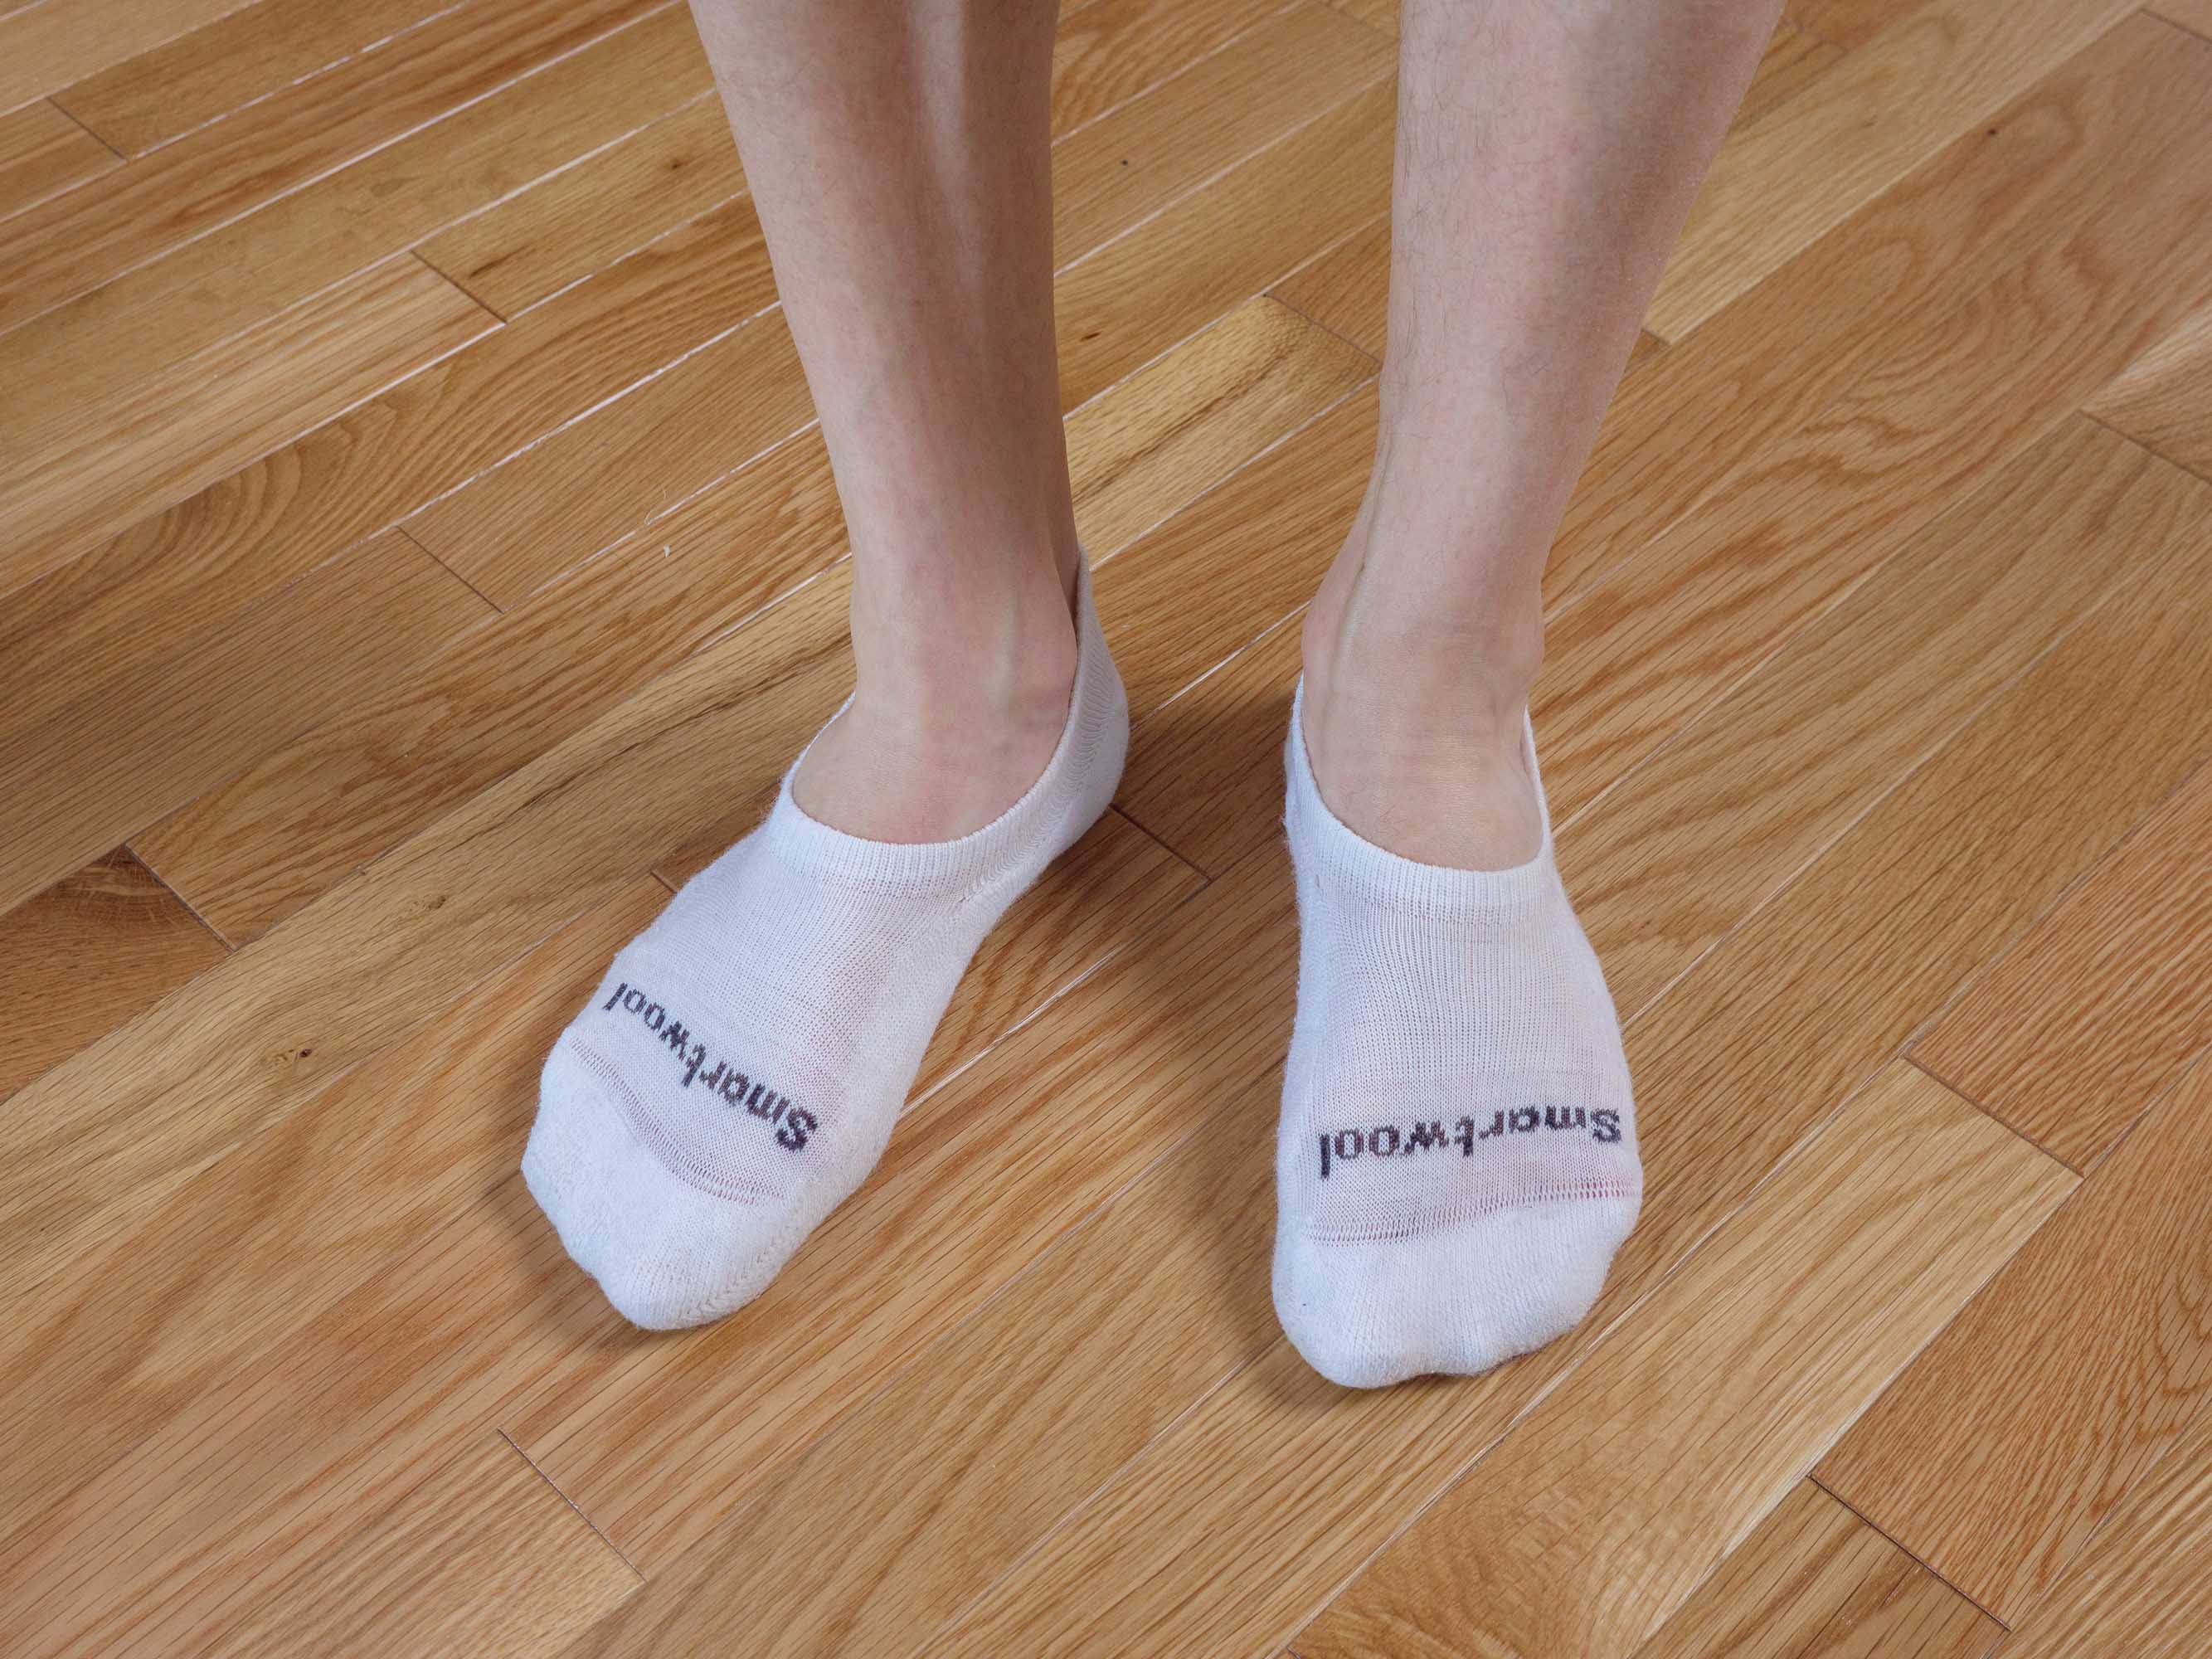 Sock Amazing No Show Socks Black & White Bamboo Socks for Men Women 8 Pack Cushion Socks Casual Socks